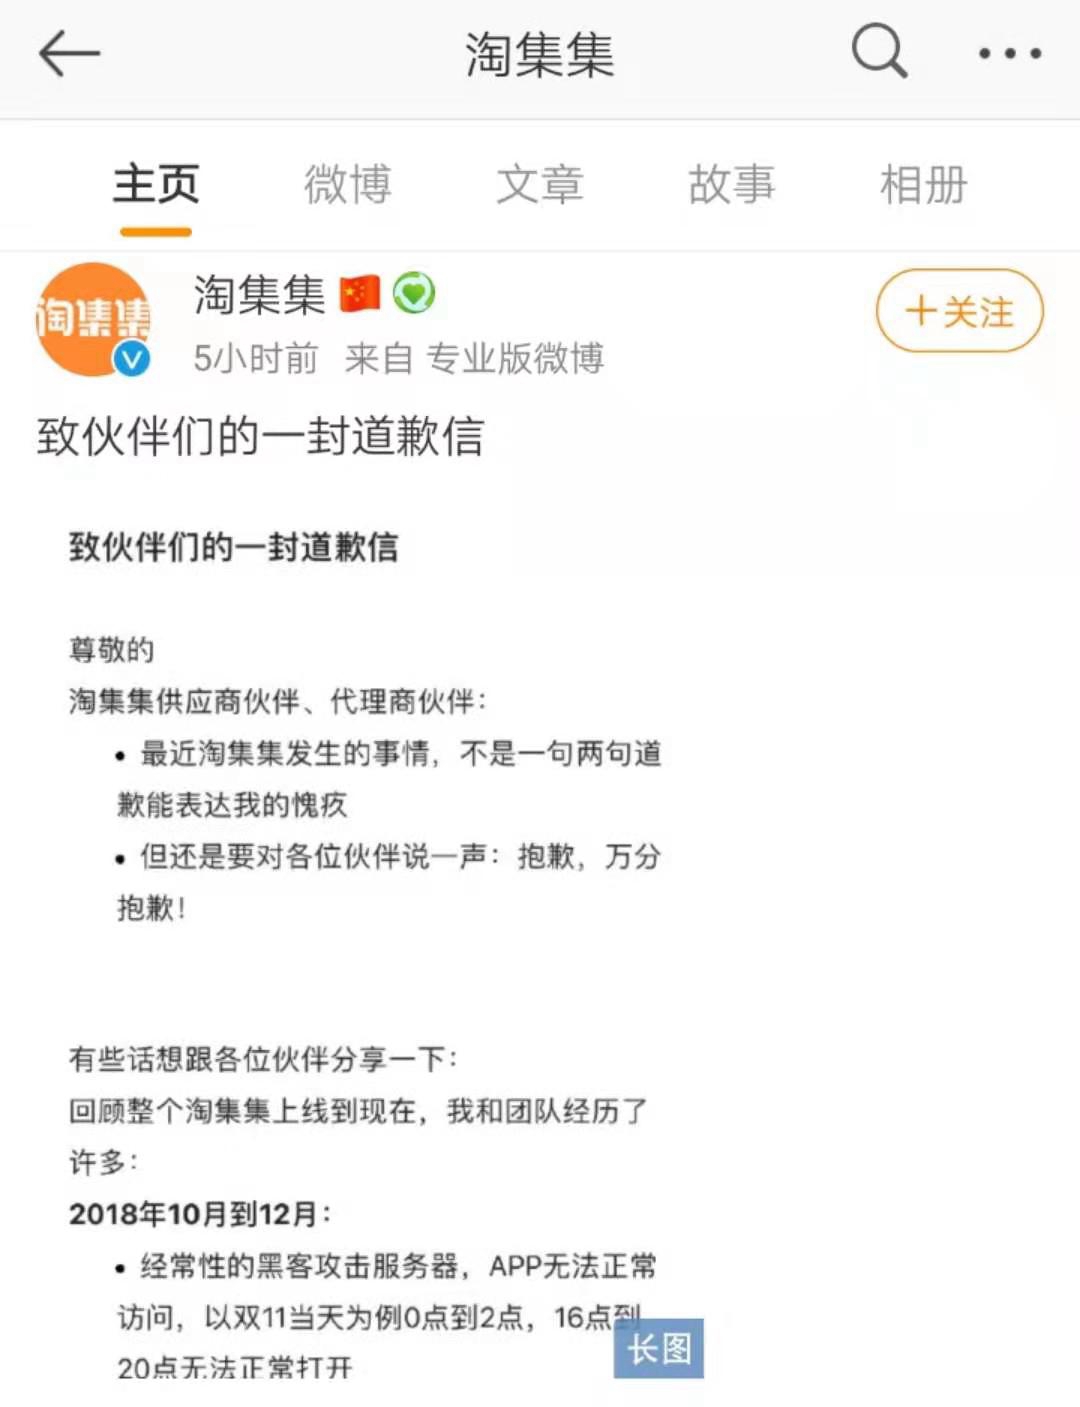  淘集集CEO张正平道歉信 来源：淘集集微博截图